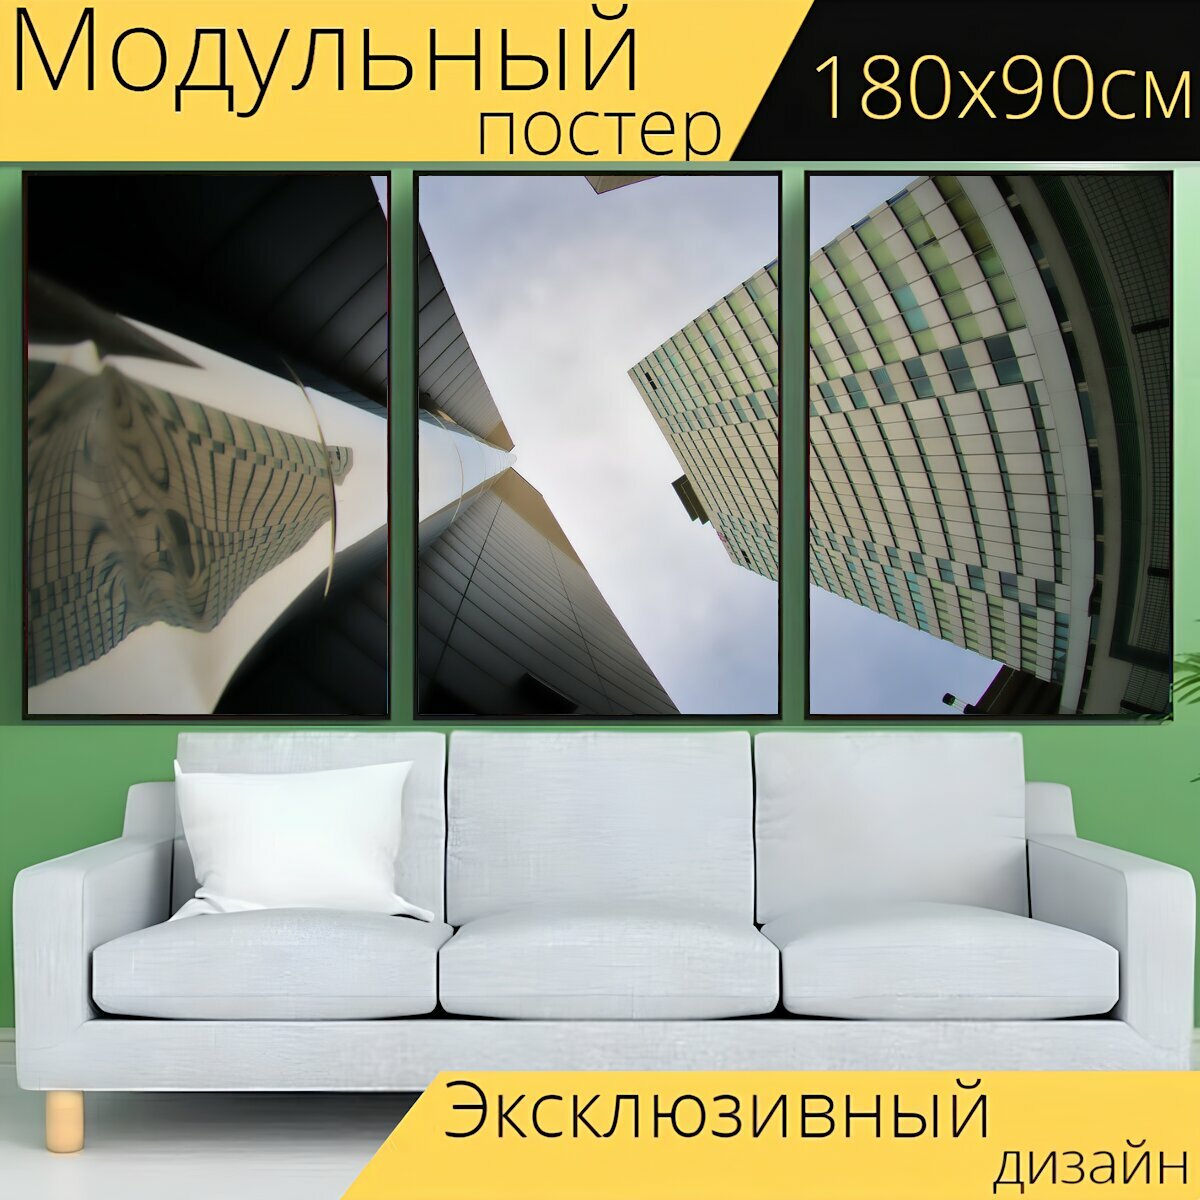 Модульный постер "Архитектуры, строительство, город" 180 x 90 см. для интерьера